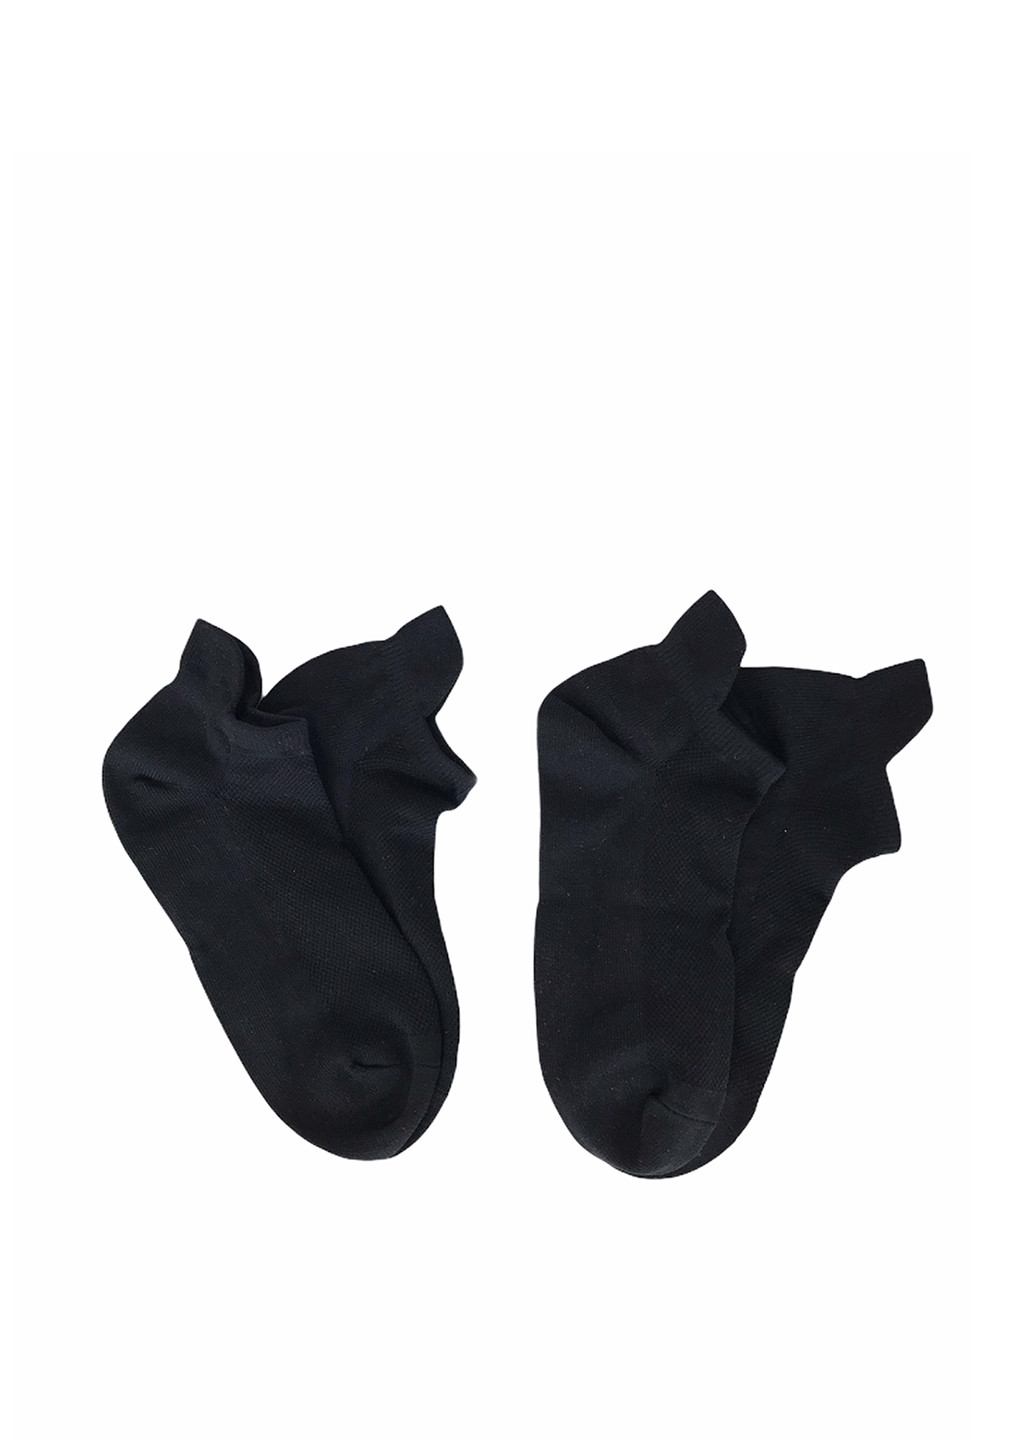 Носки (2 пары) H&M однотонные чёрные повседневные